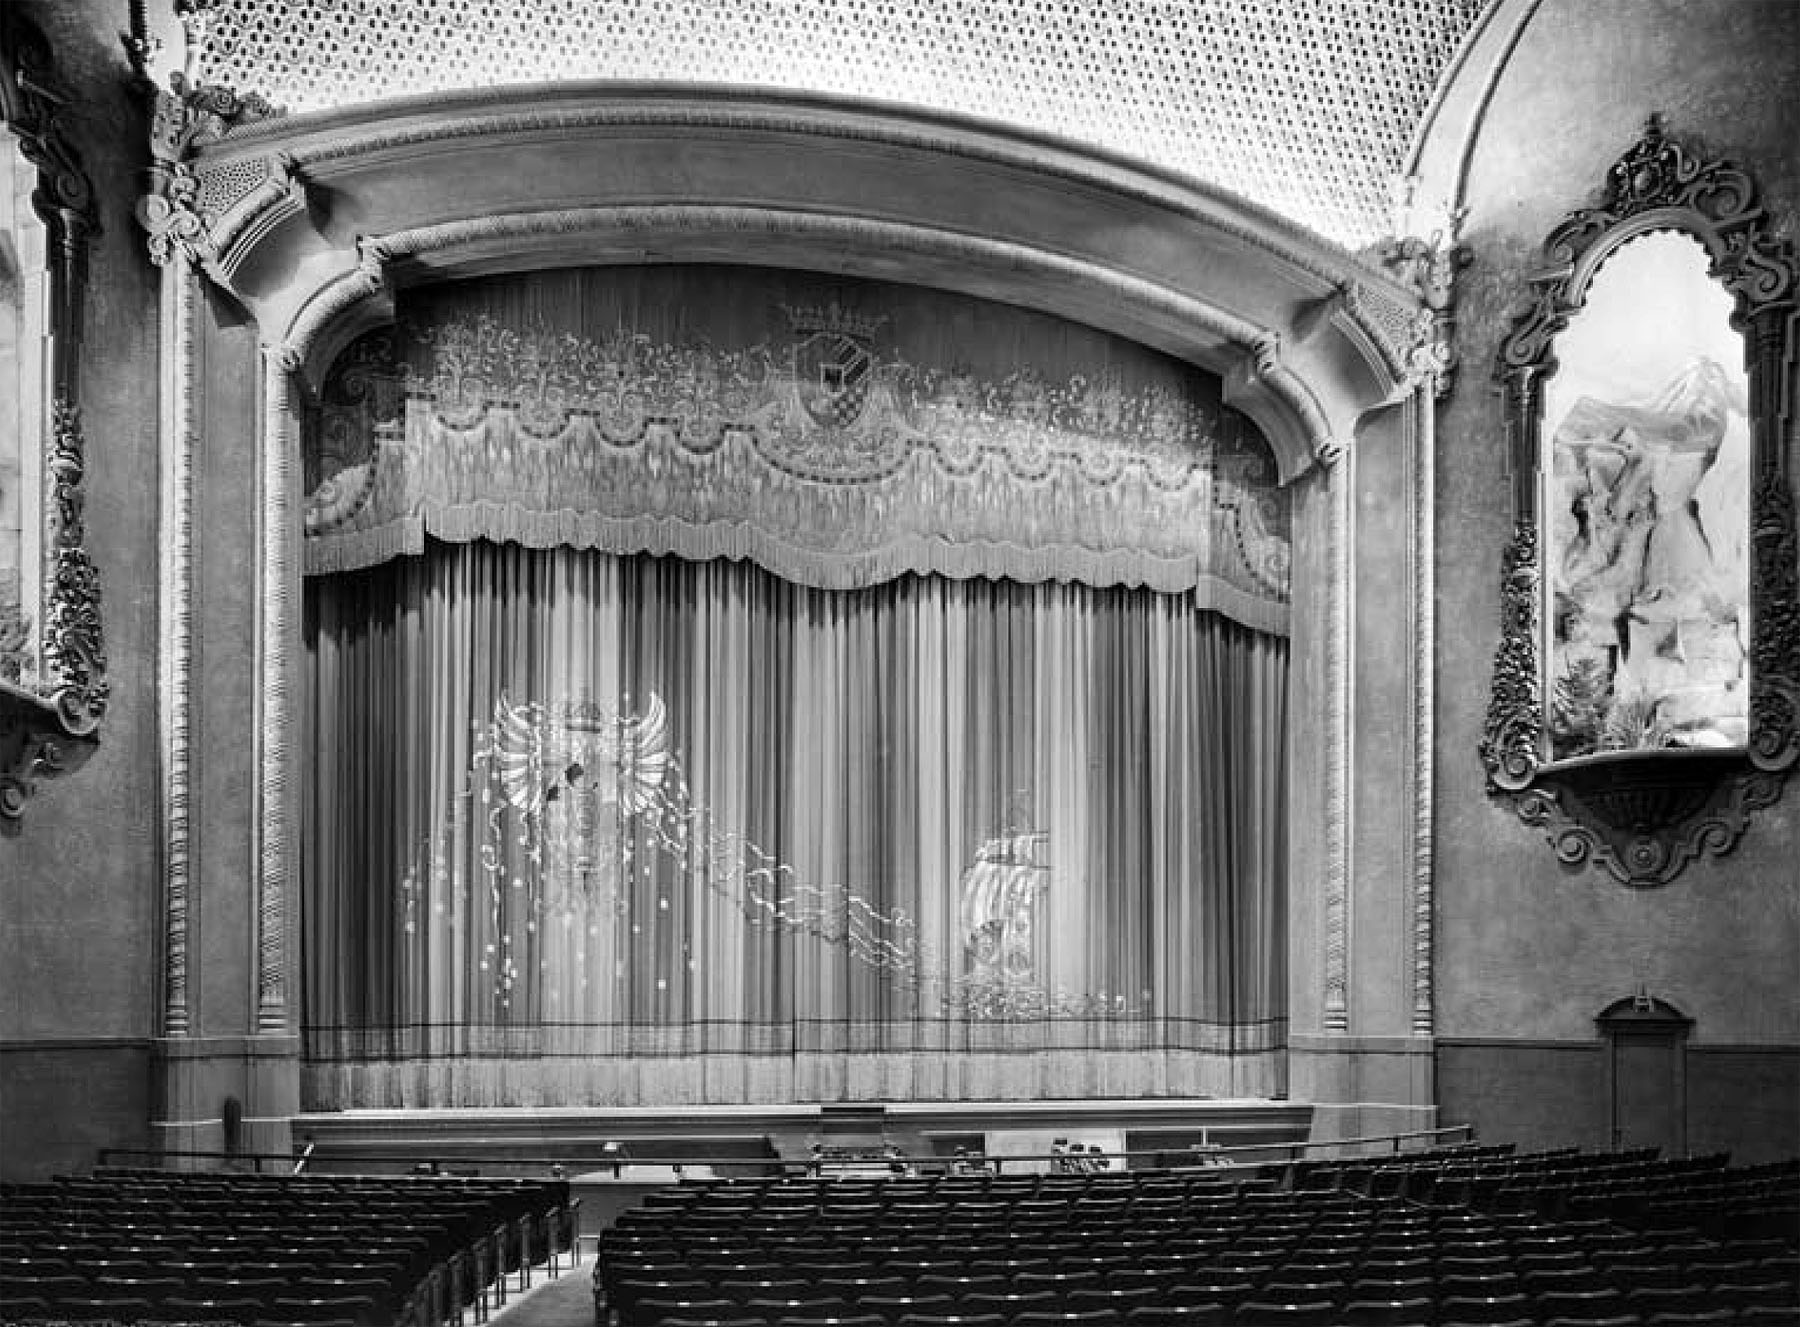 The Balboa Theatre in 1924